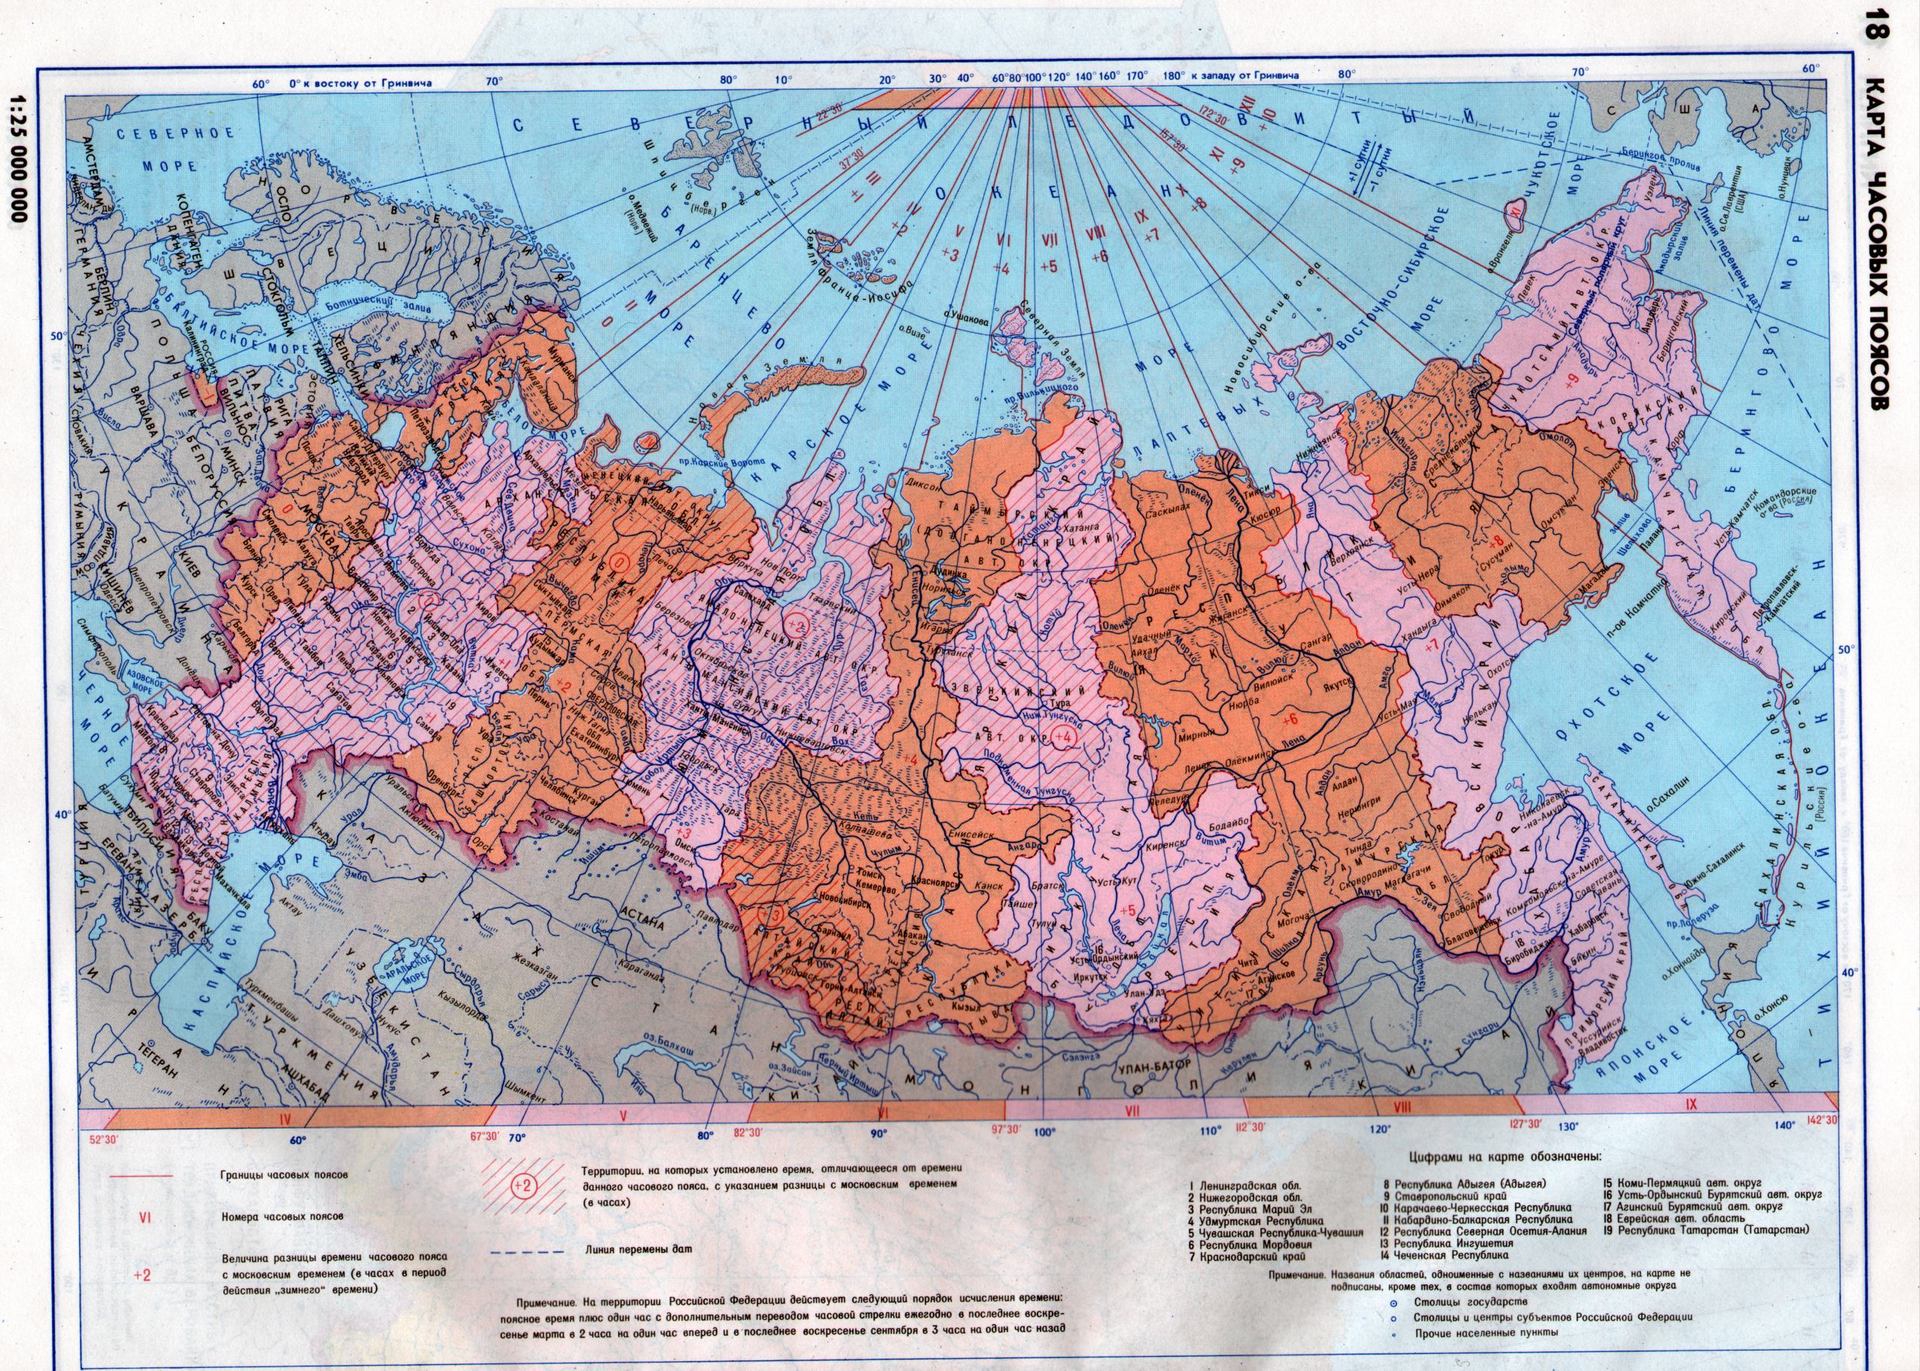 Долгота физической карты россии